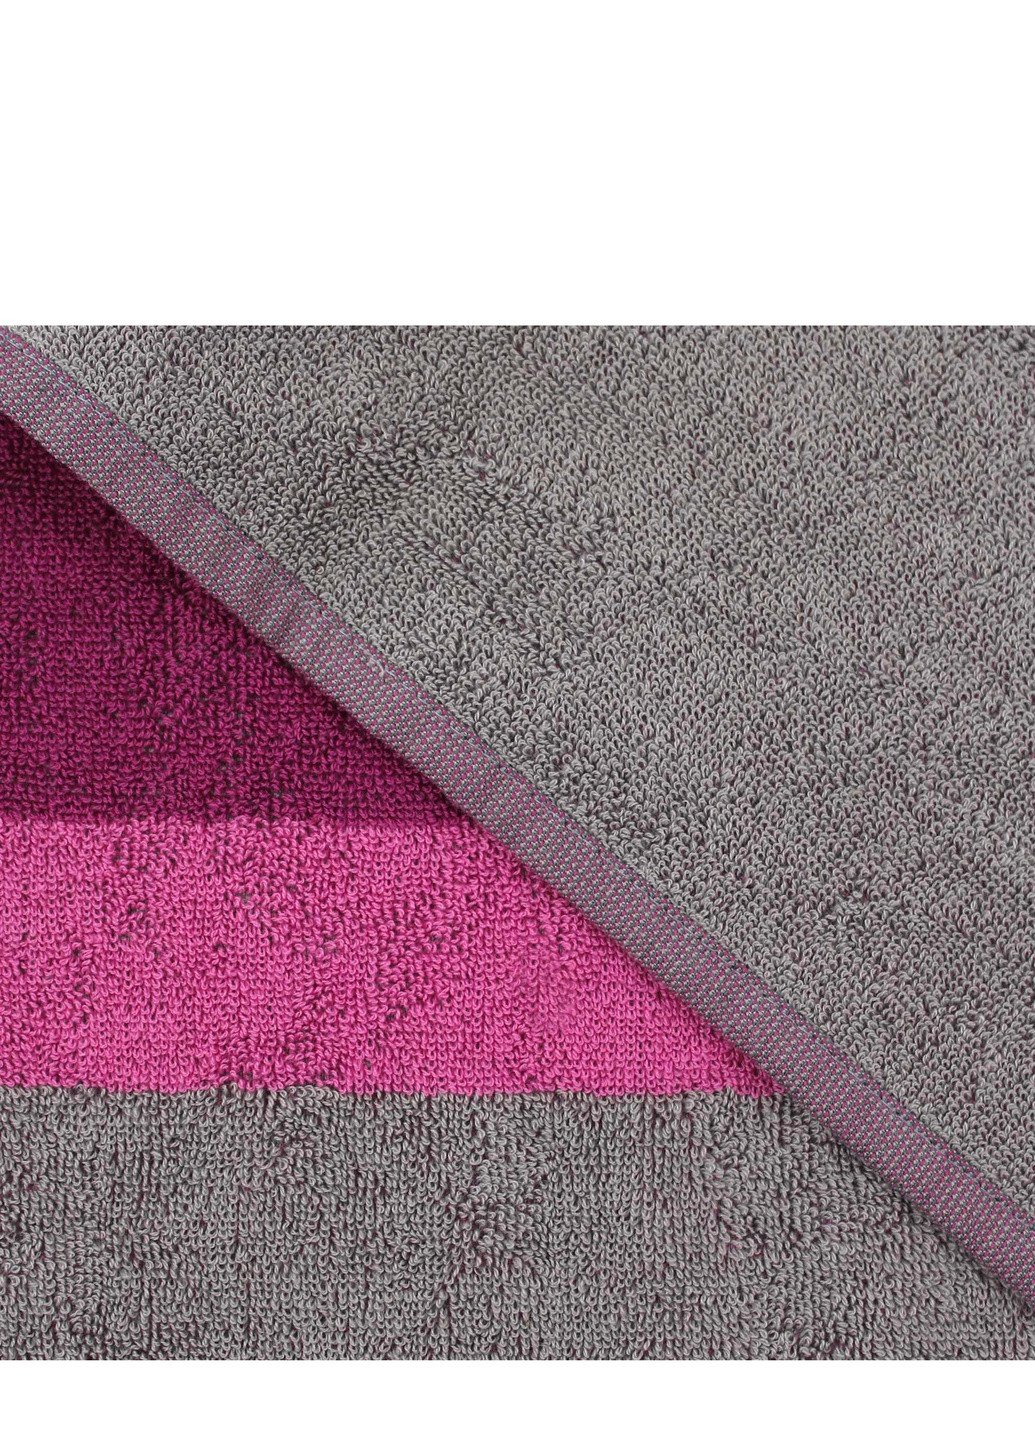 Bulgaria-Tex полотенце махровое moderna, мультицветное, лиловое, размер 40x60 cm лиловый производство - Болгария